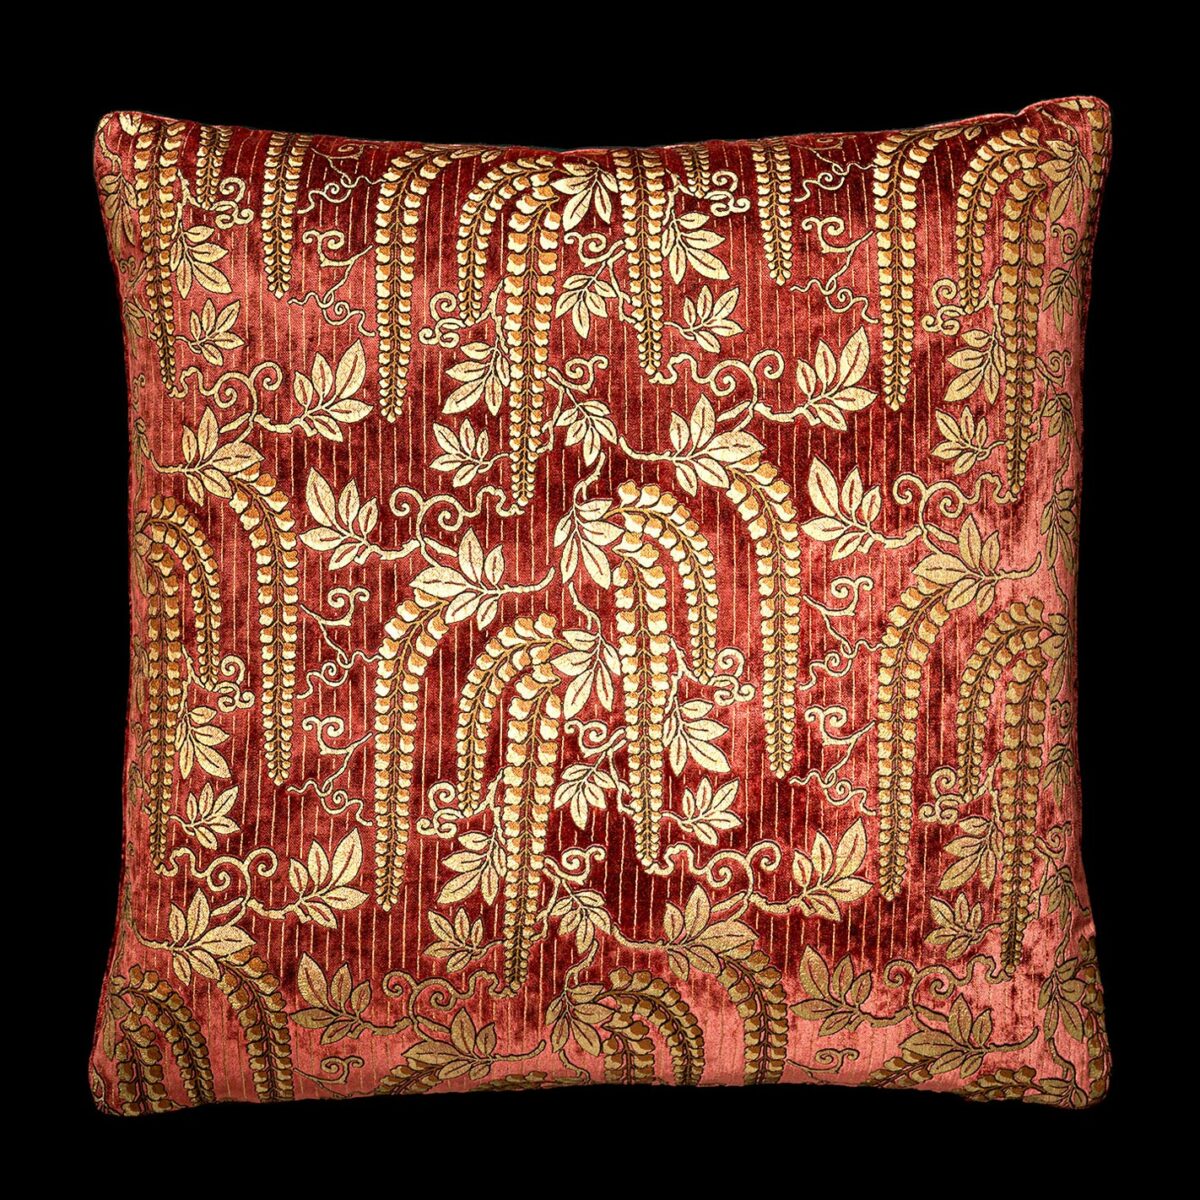 Delphos velvet cushion